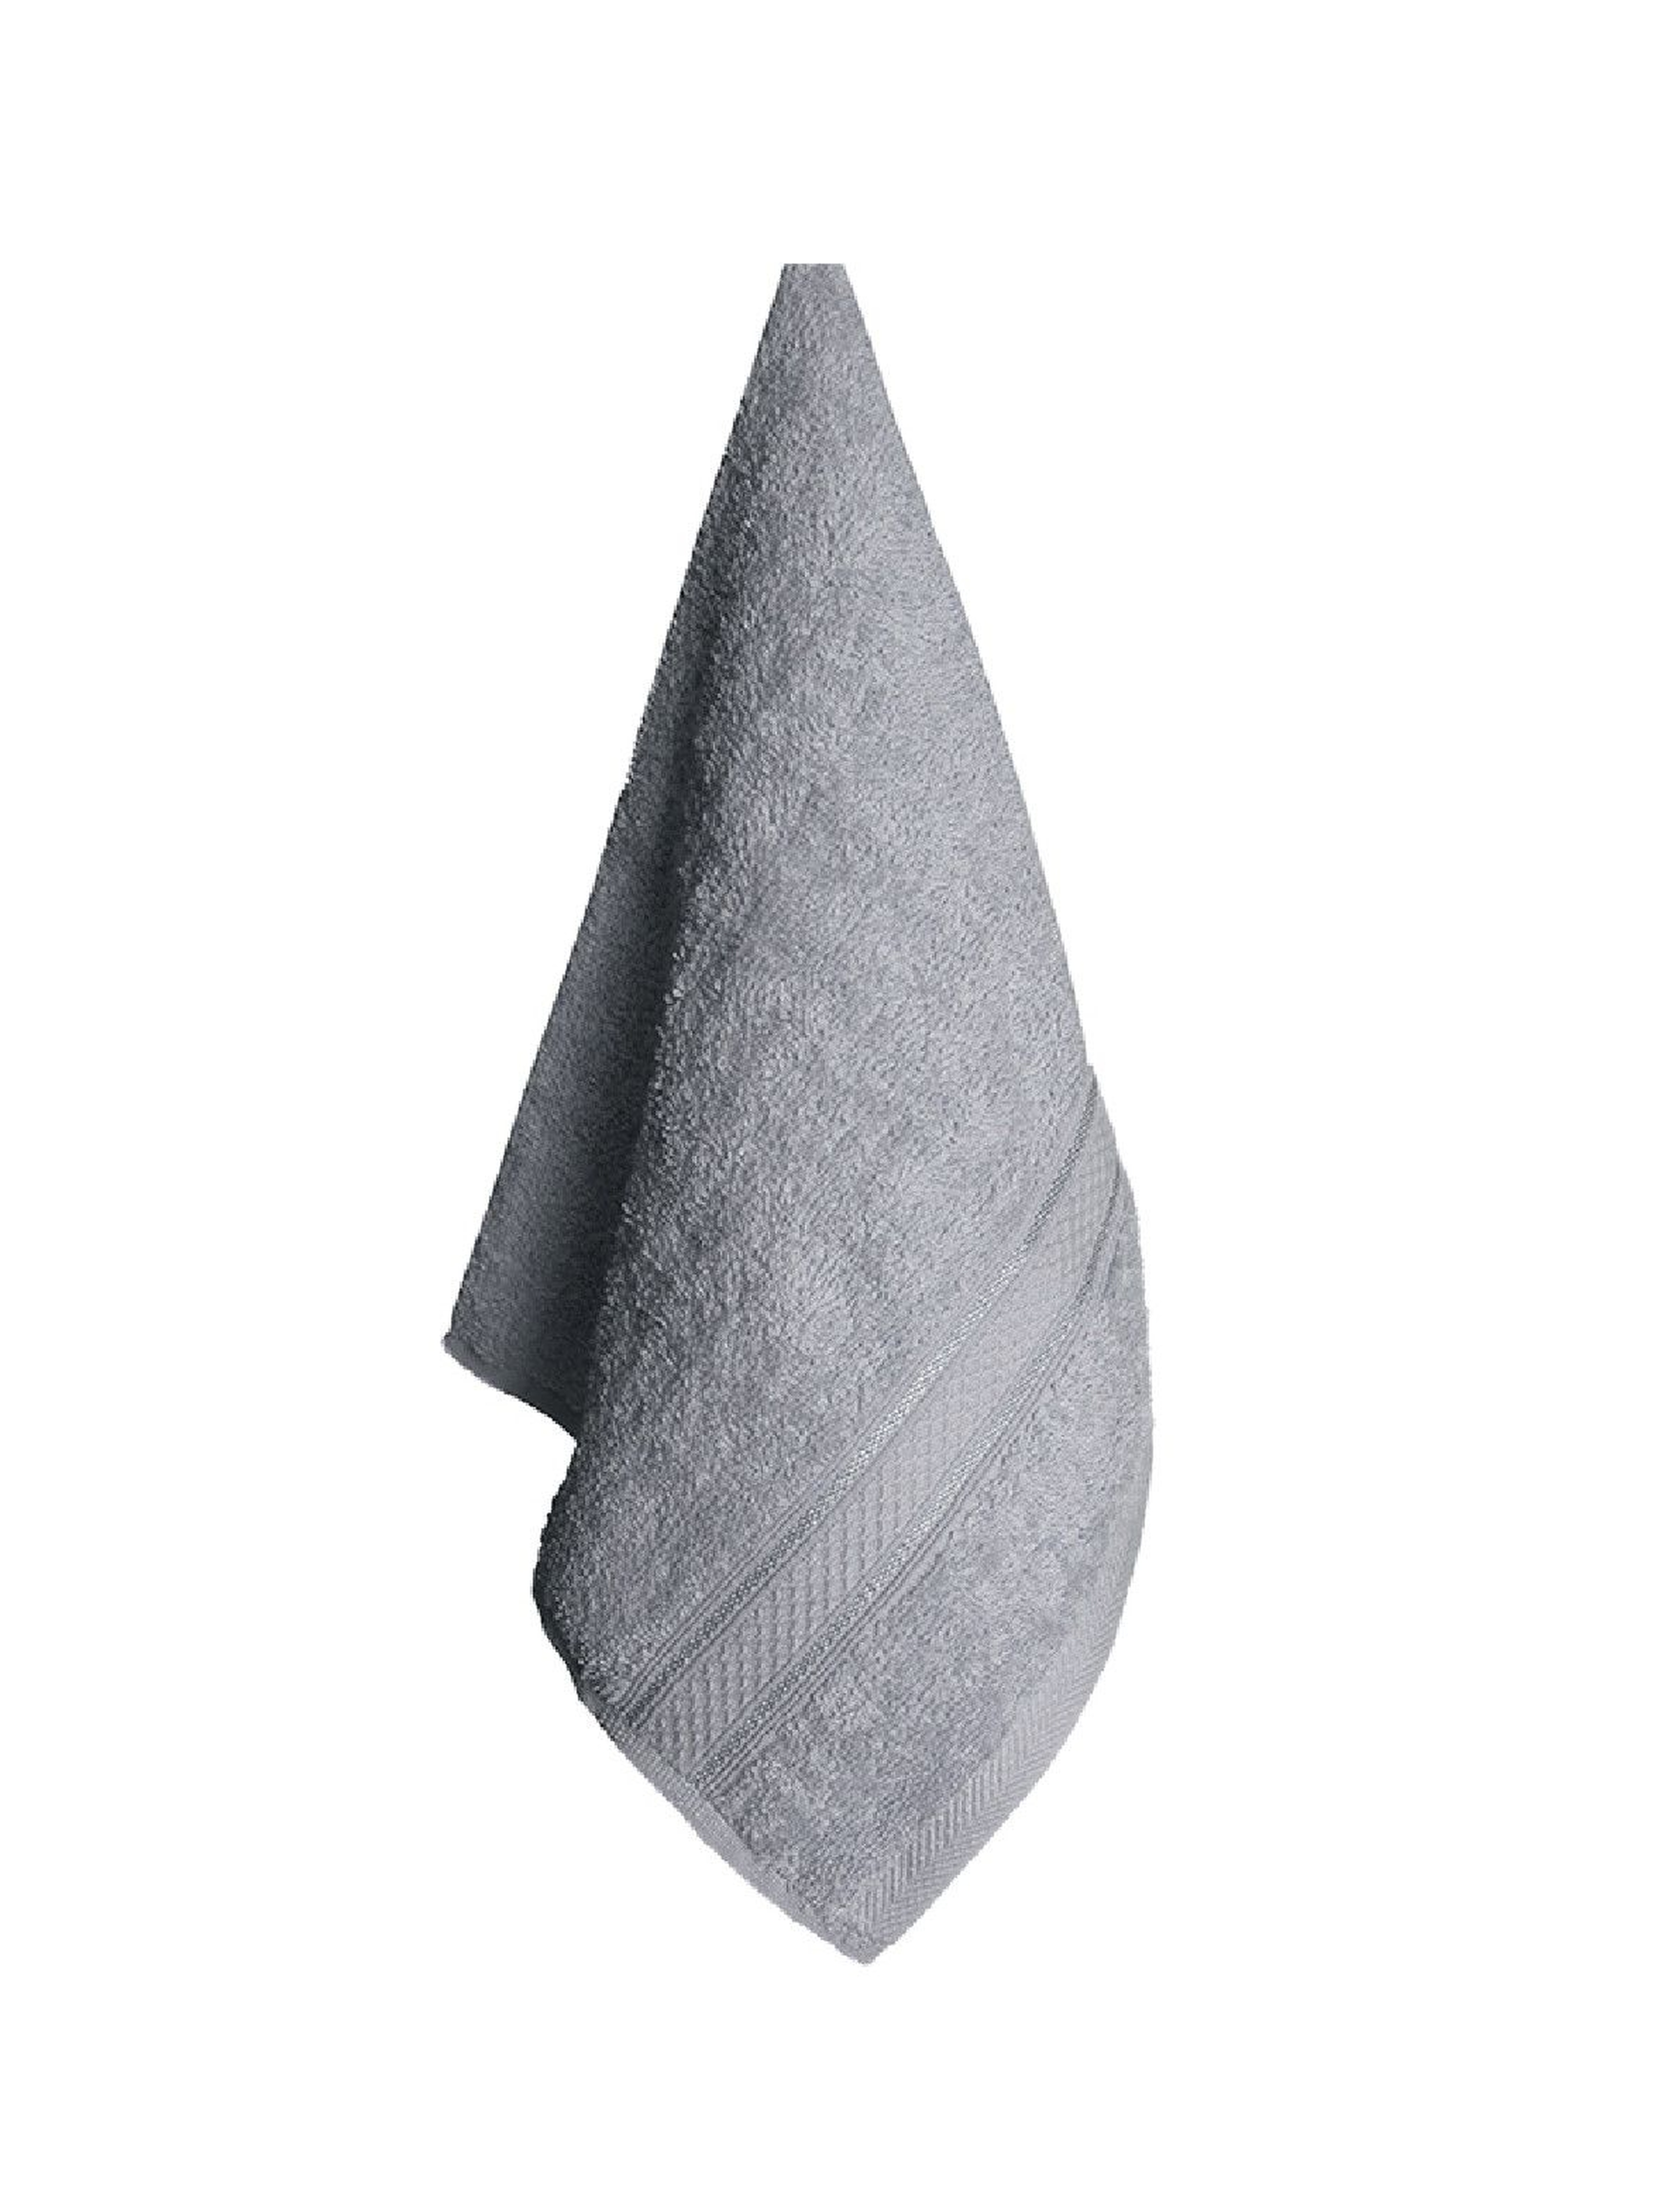 Ręcznik bawełniany VENA szary 30x50cm - 2-pak